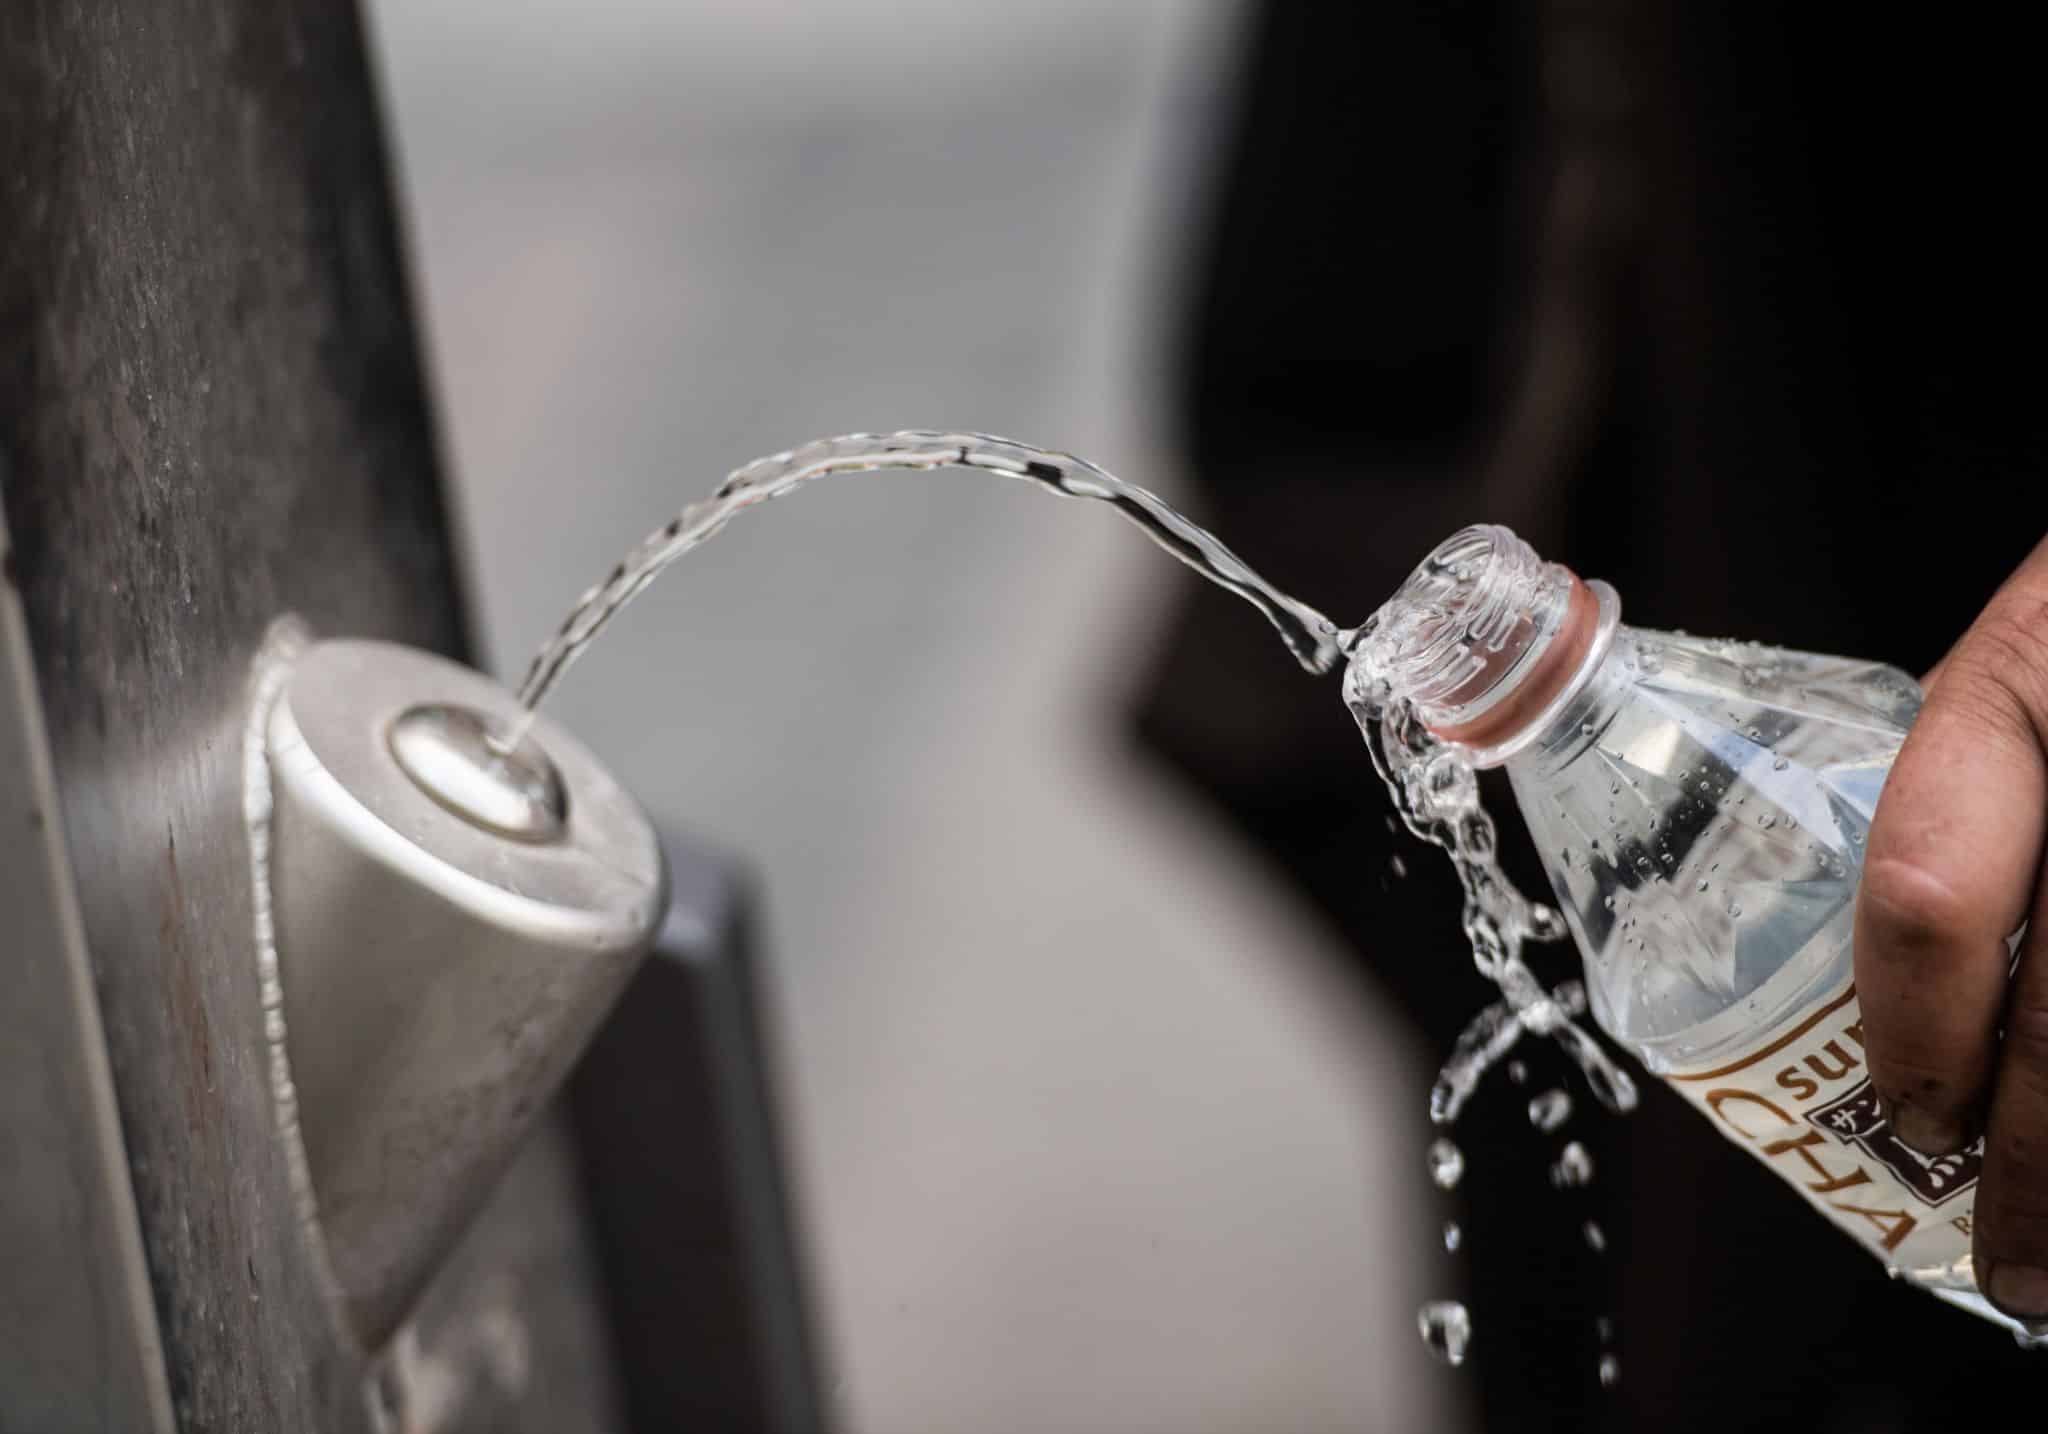 Hitzeschutz: Umweltminister will gratis Trinkwasser für alle in Städten und Kommunen